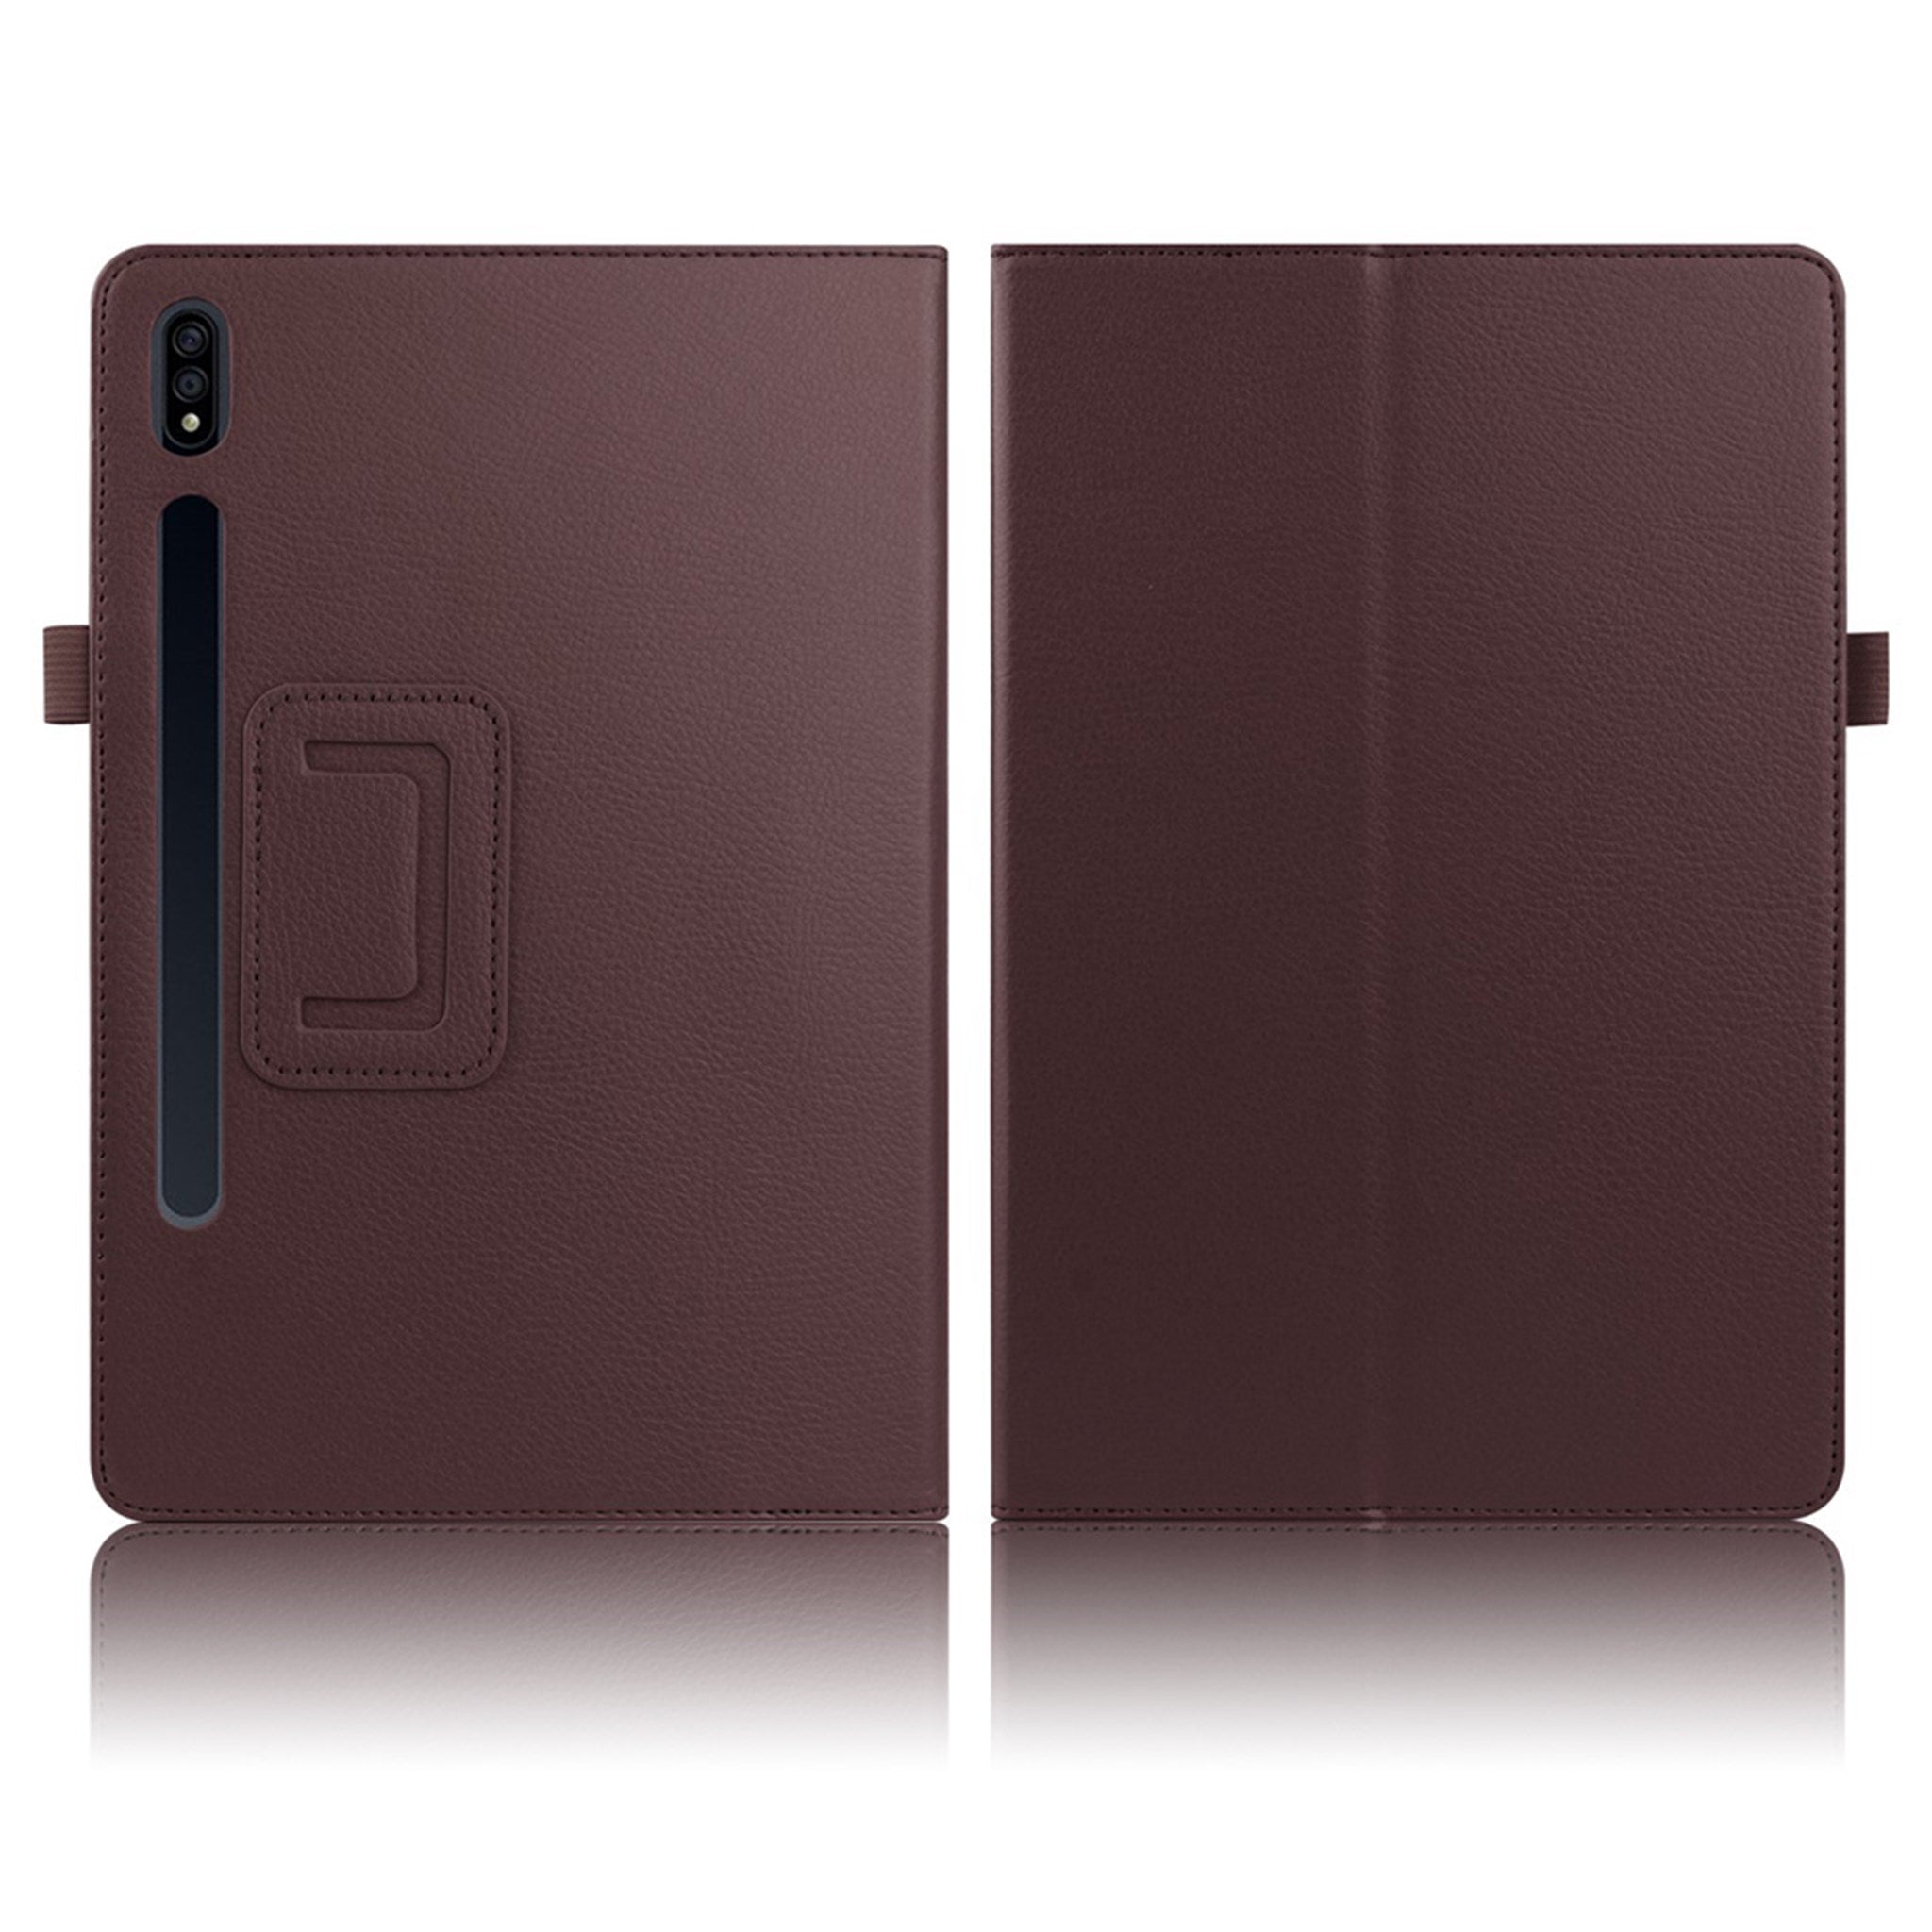 Samsung Galaxy Tab S7 Plus litchi leather flip case - Coffee